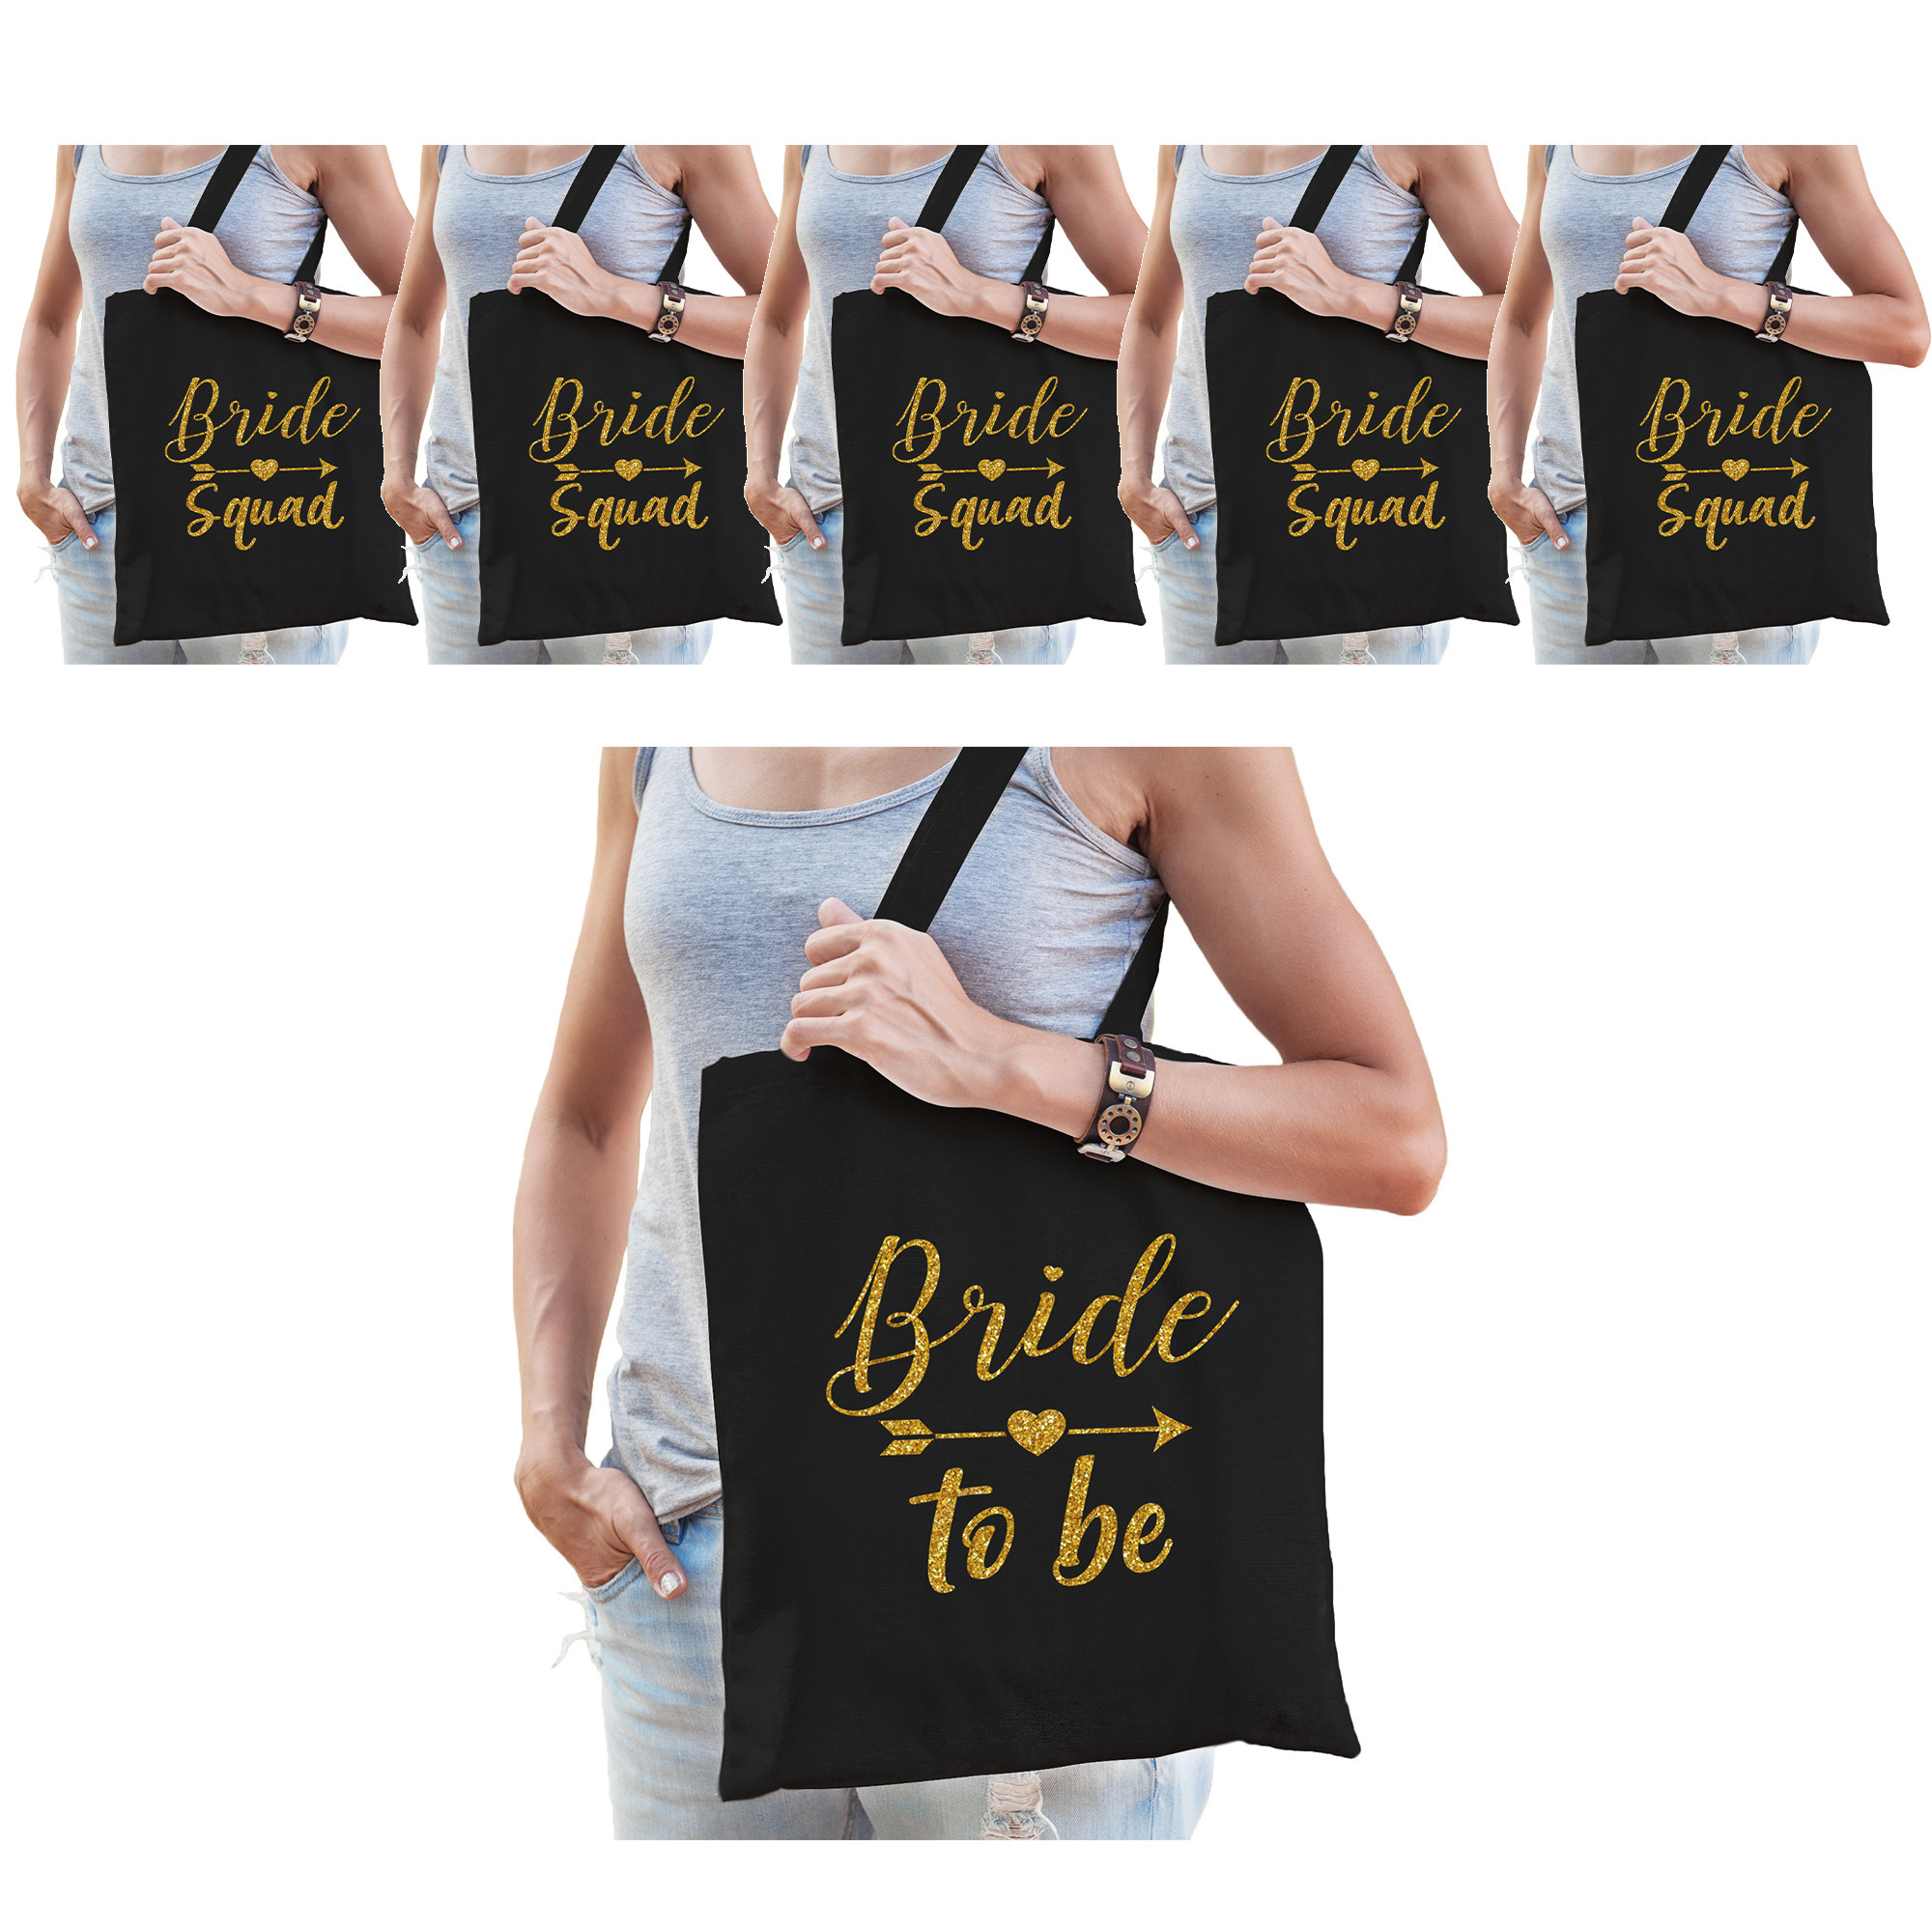 Vrijgezellenfeest dames tasjes/ goodiebag pakket: 1x Bride to Be zwart goud+ 7x Bride Squad zwart go